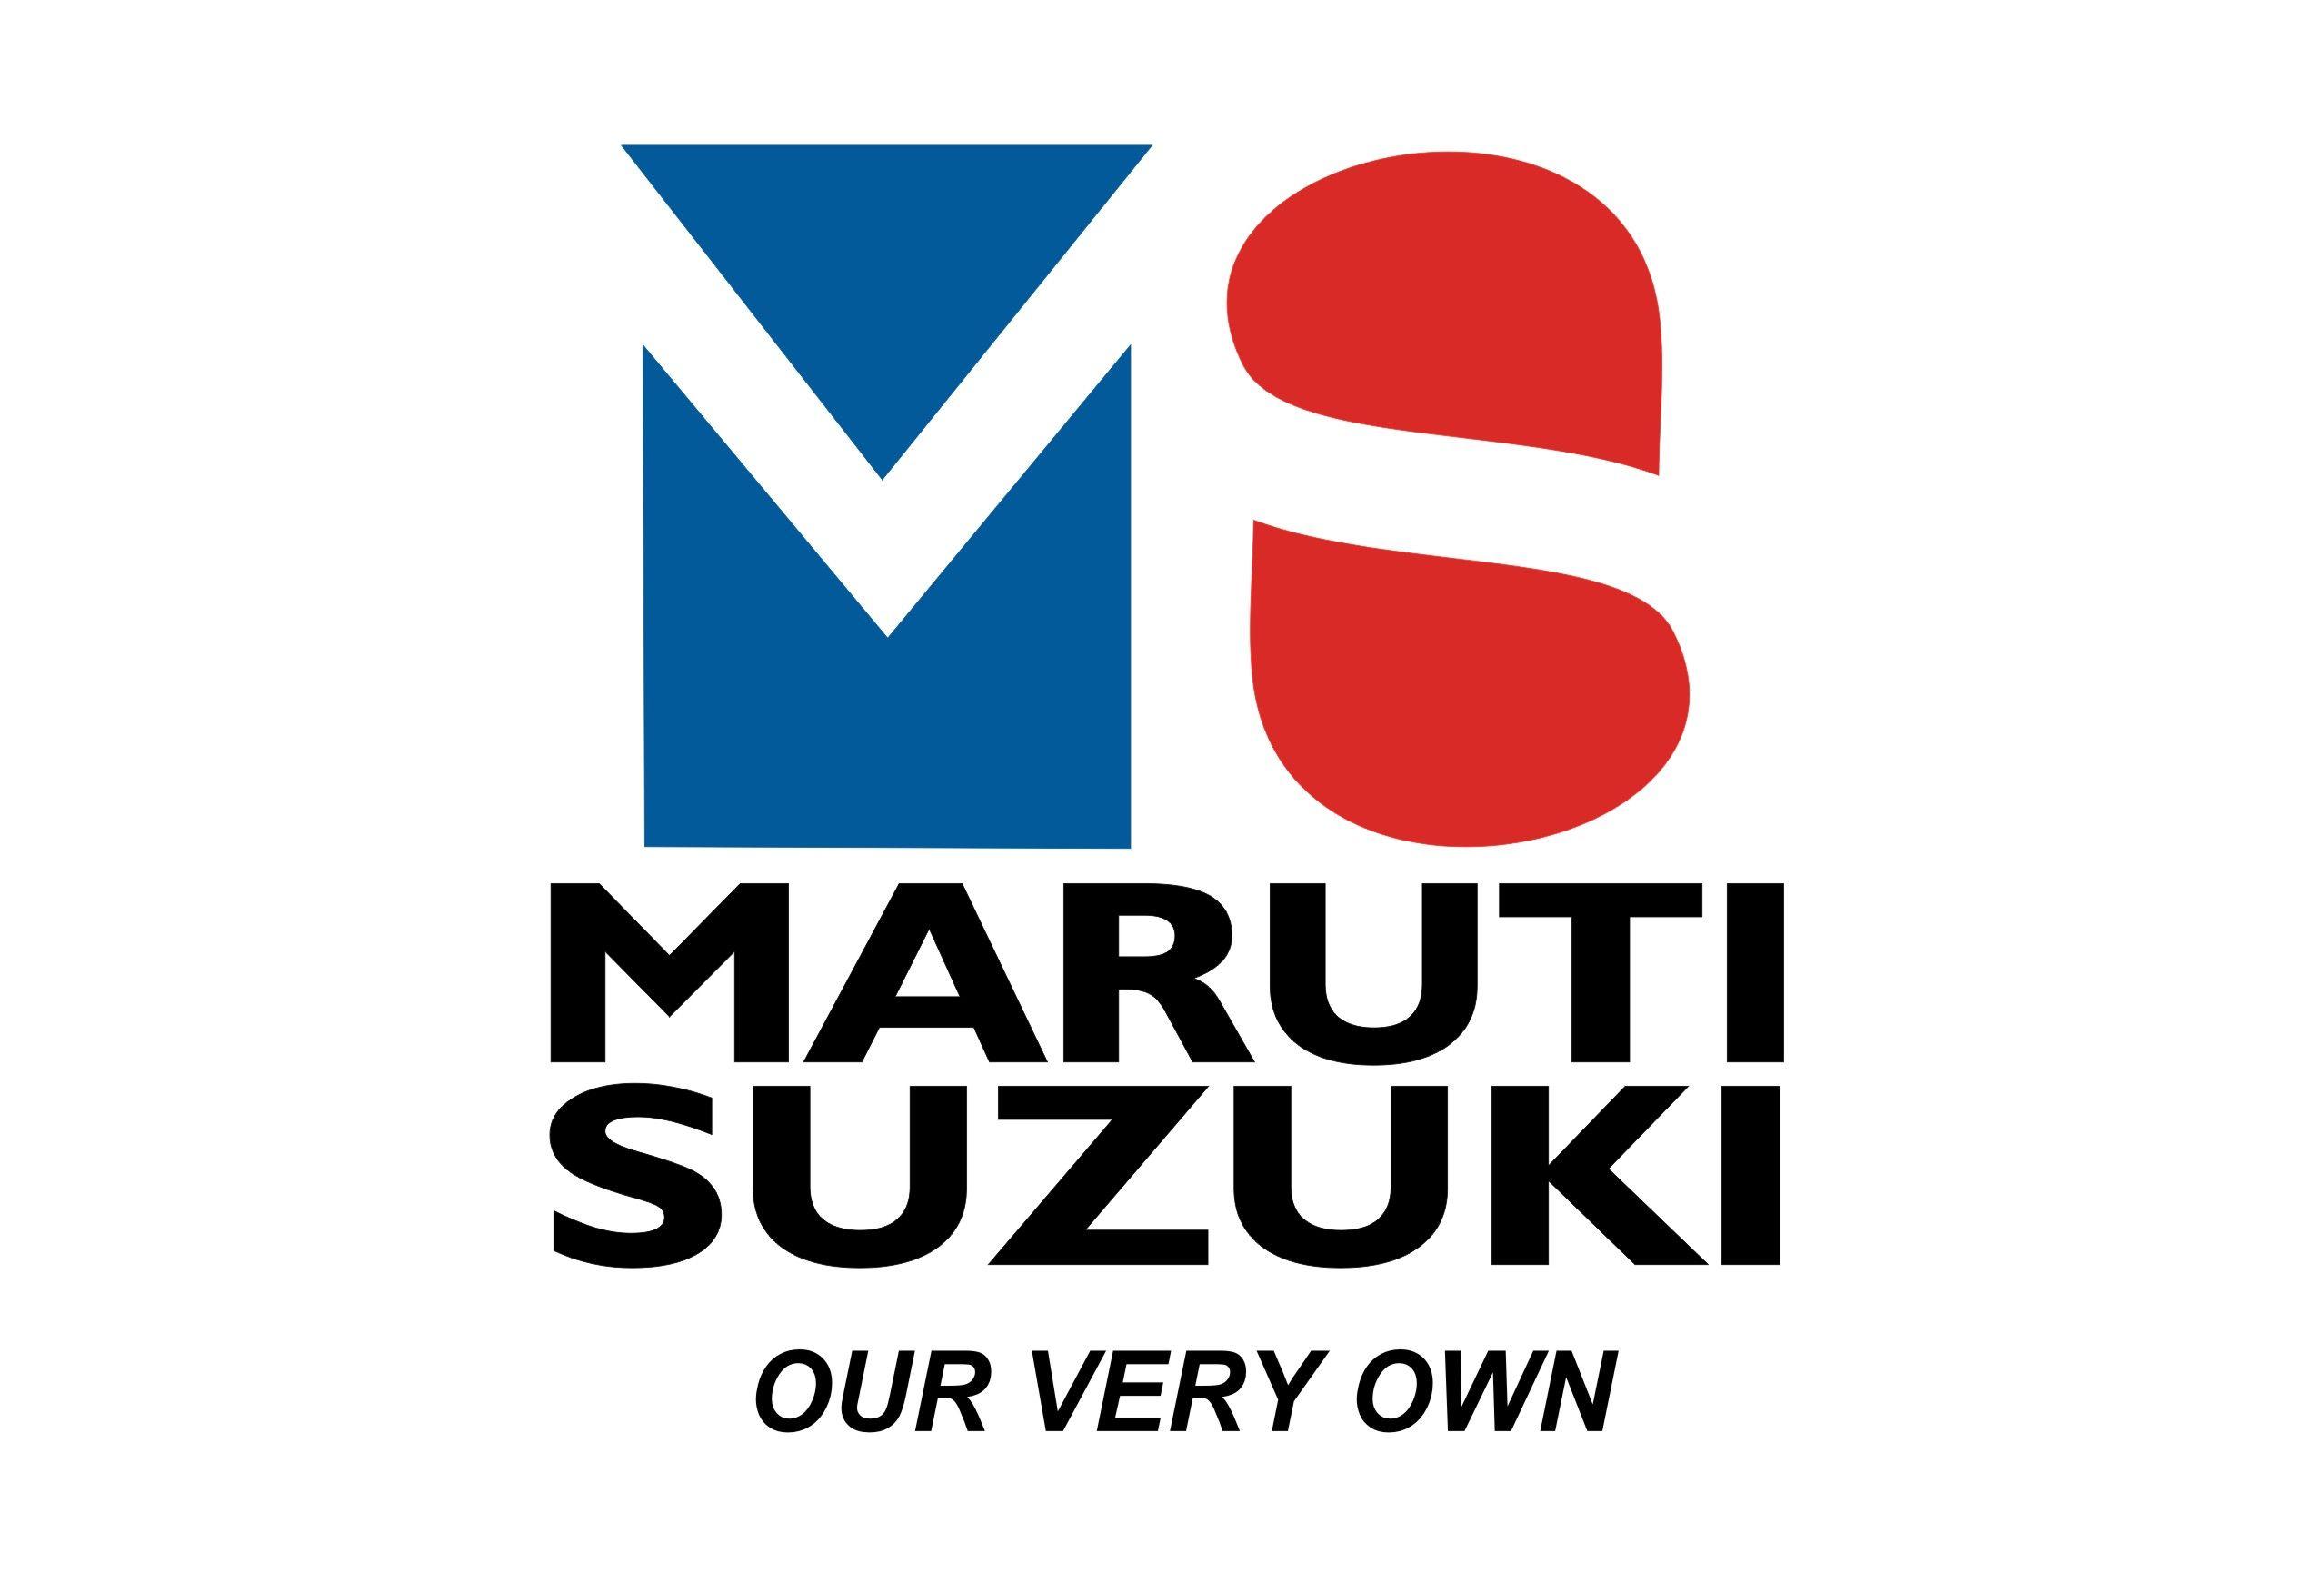 Maruti Suzuki Logo - Maruti Suzuki Logo